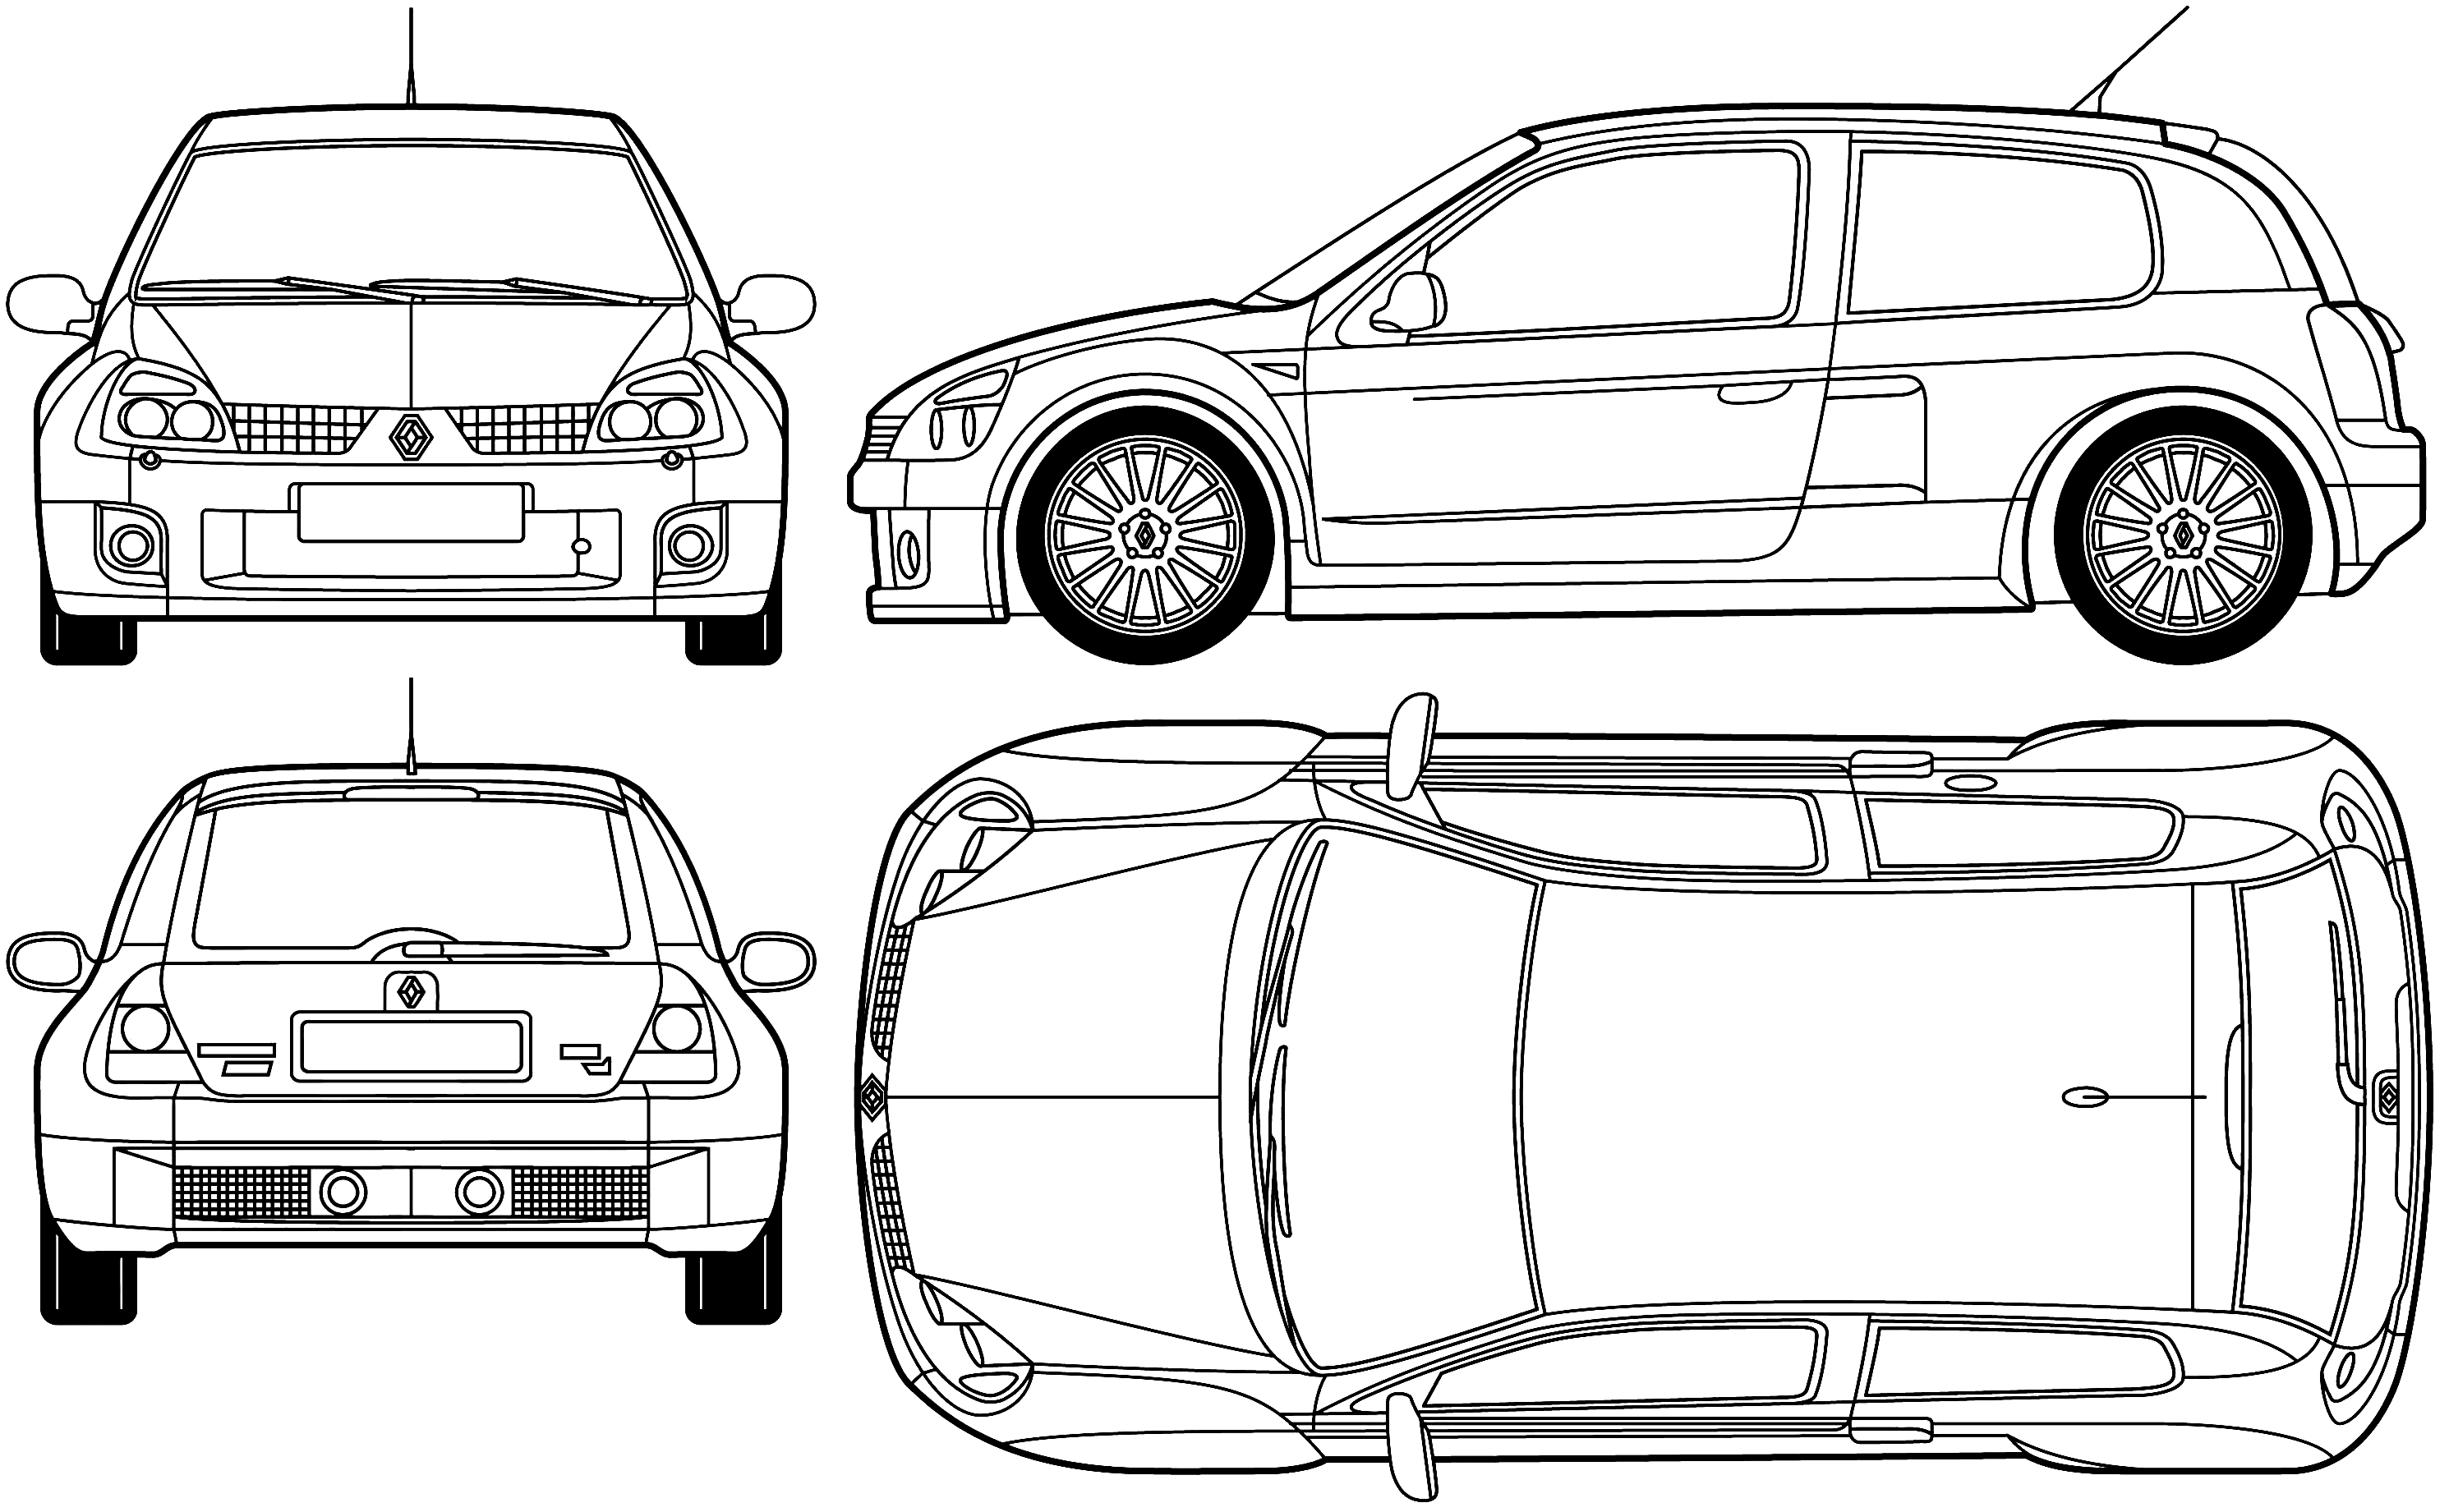 Renault Clio V6 blueprint